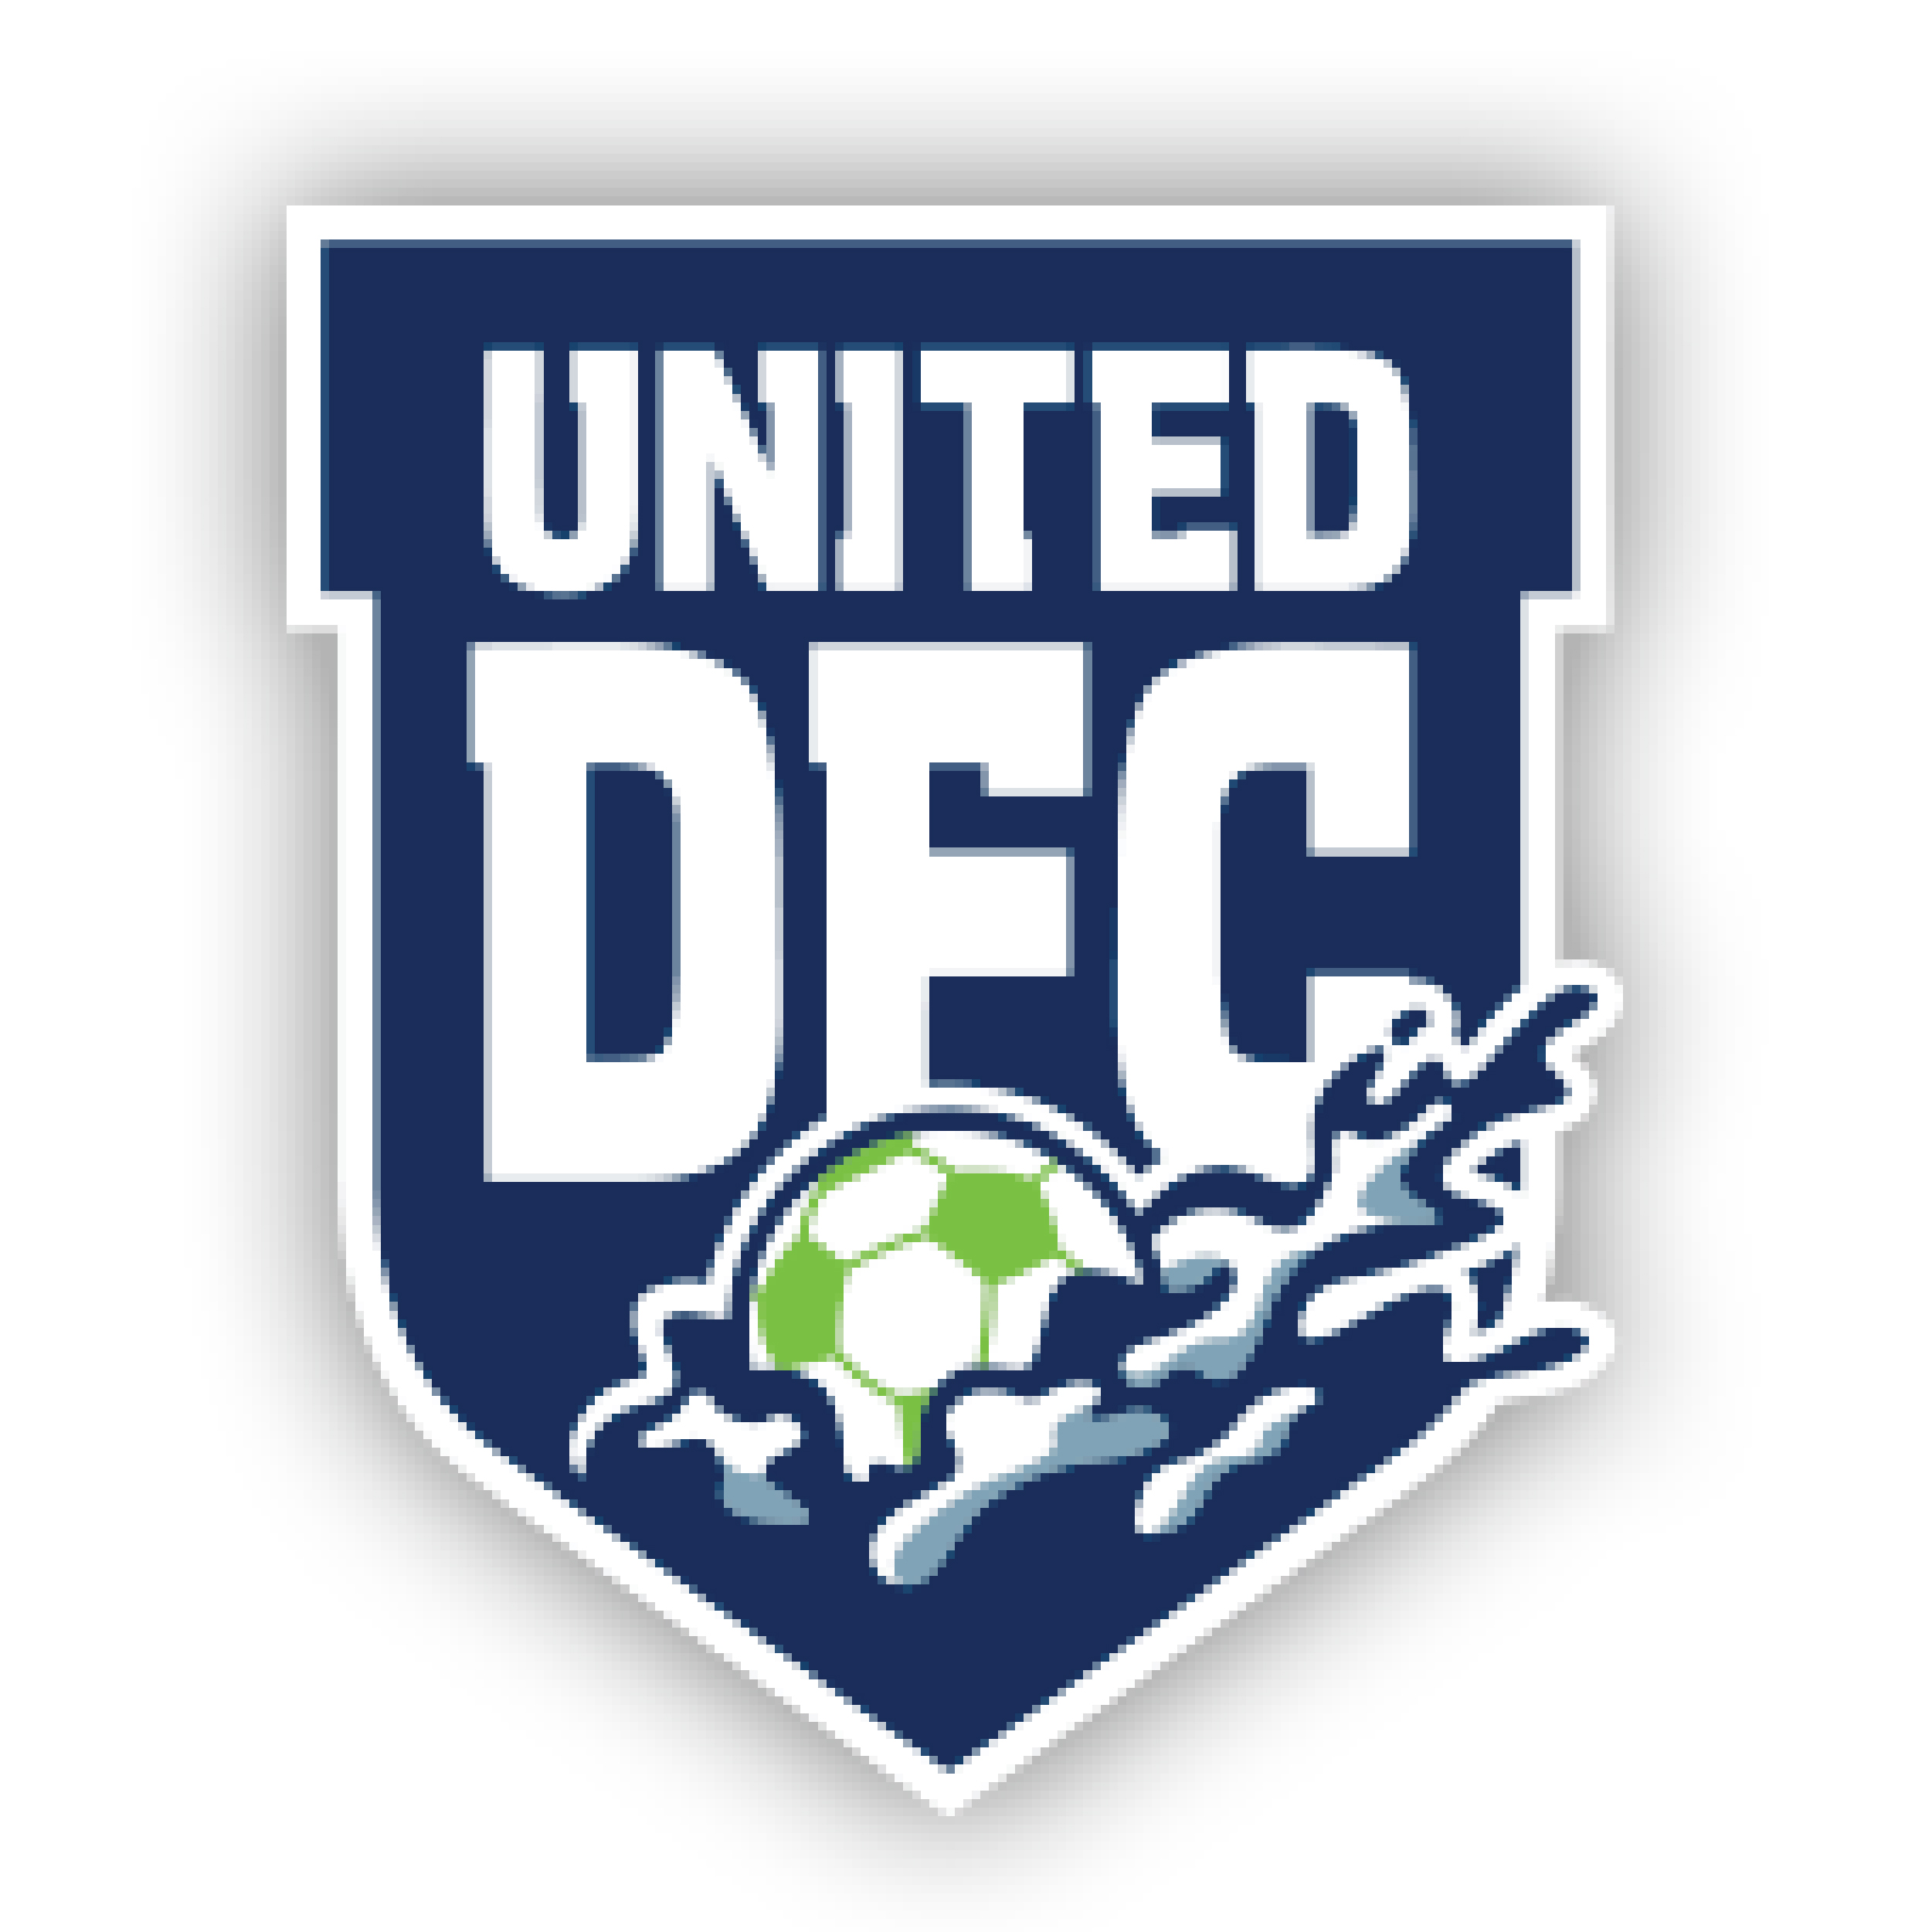 United Dartmouth Football Club